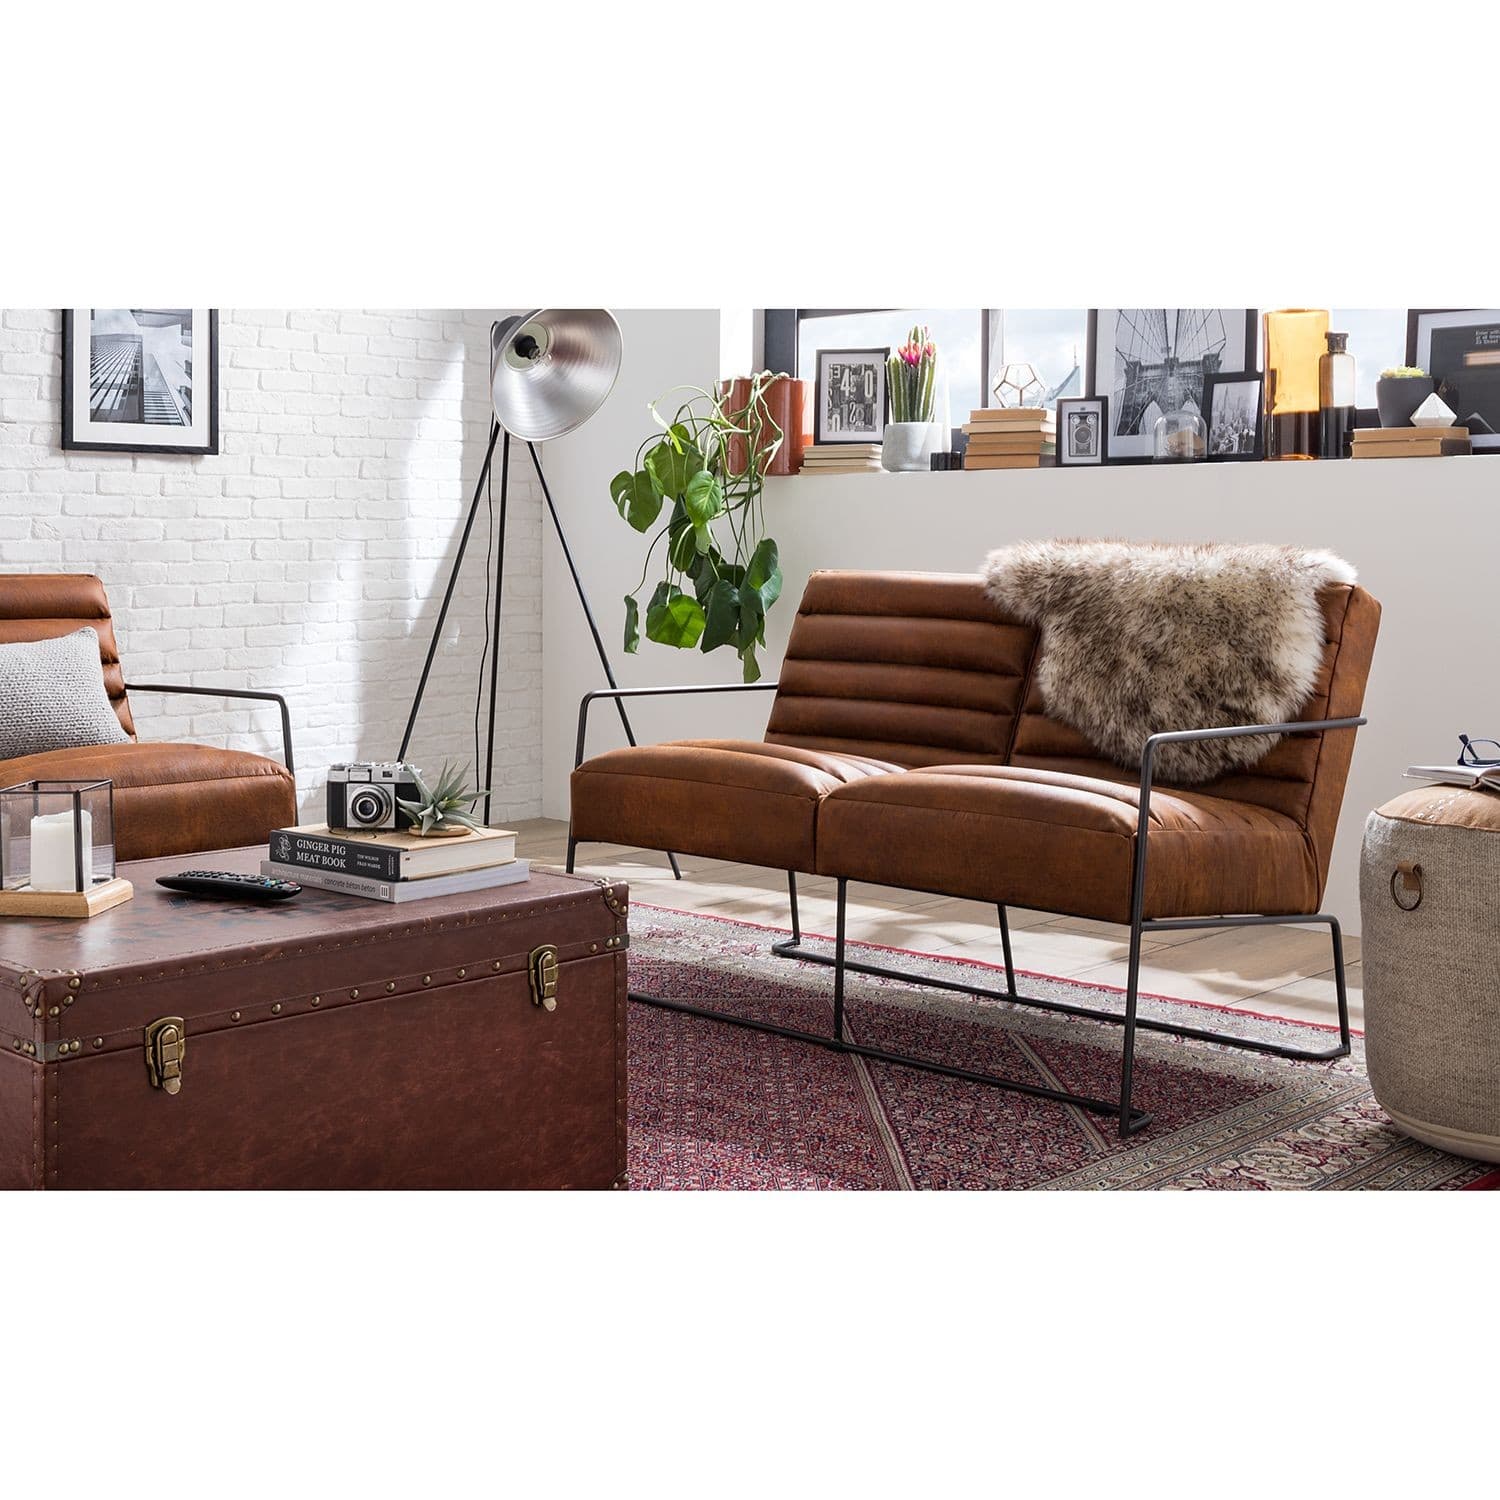 Foto van ROGER II sofa, leather upholstery